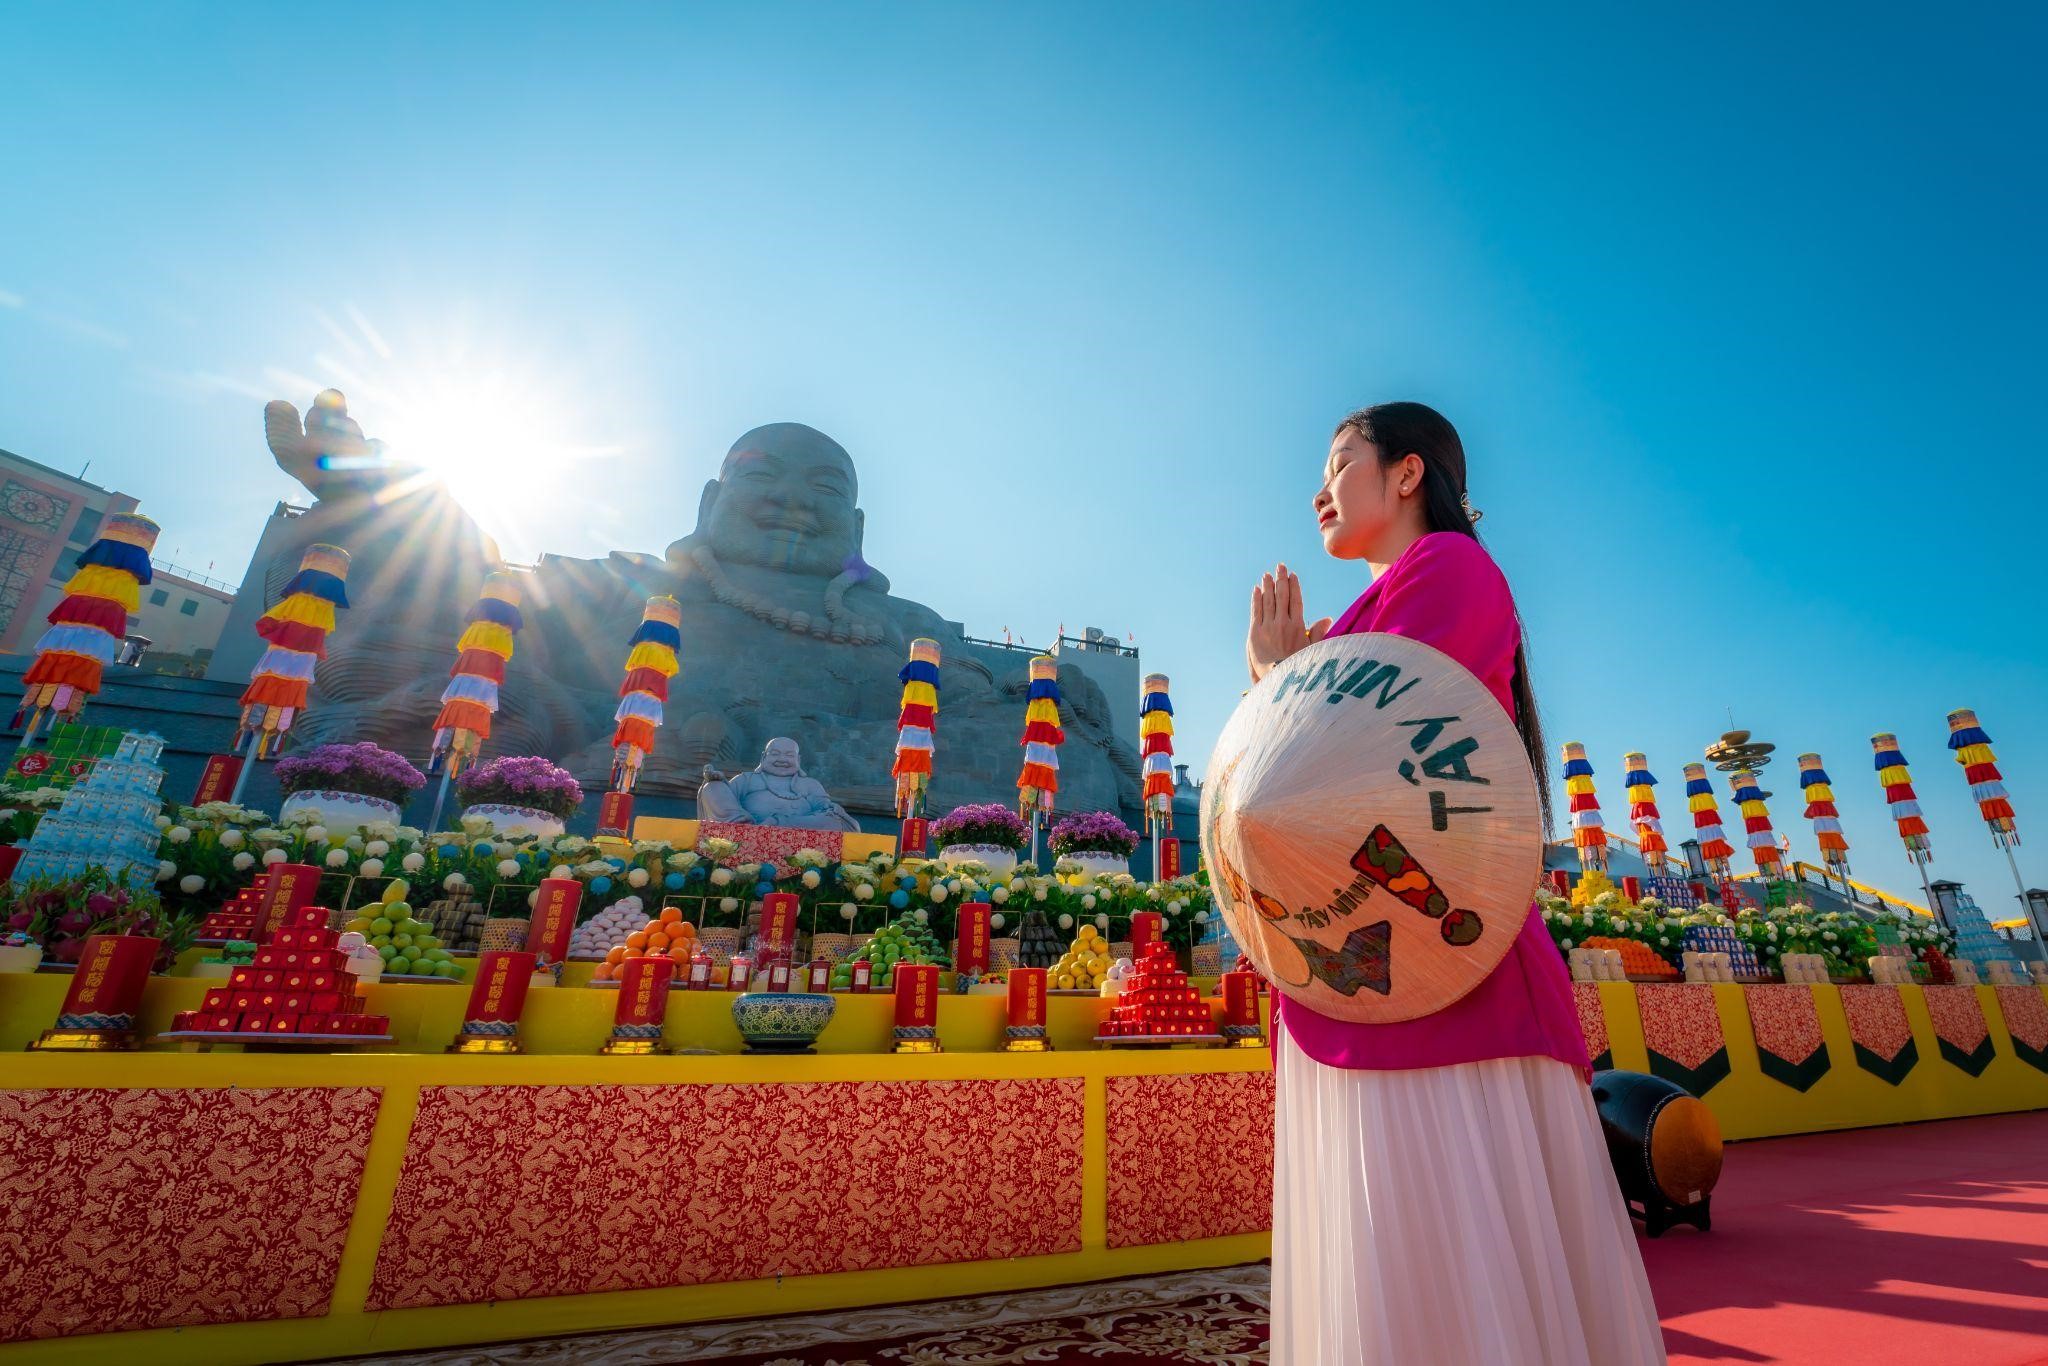 Kinh tế - Những trải nghiệm lễ hội xuân không thể bỏ lỡ tại núi Bà Đen, Tây Ninh